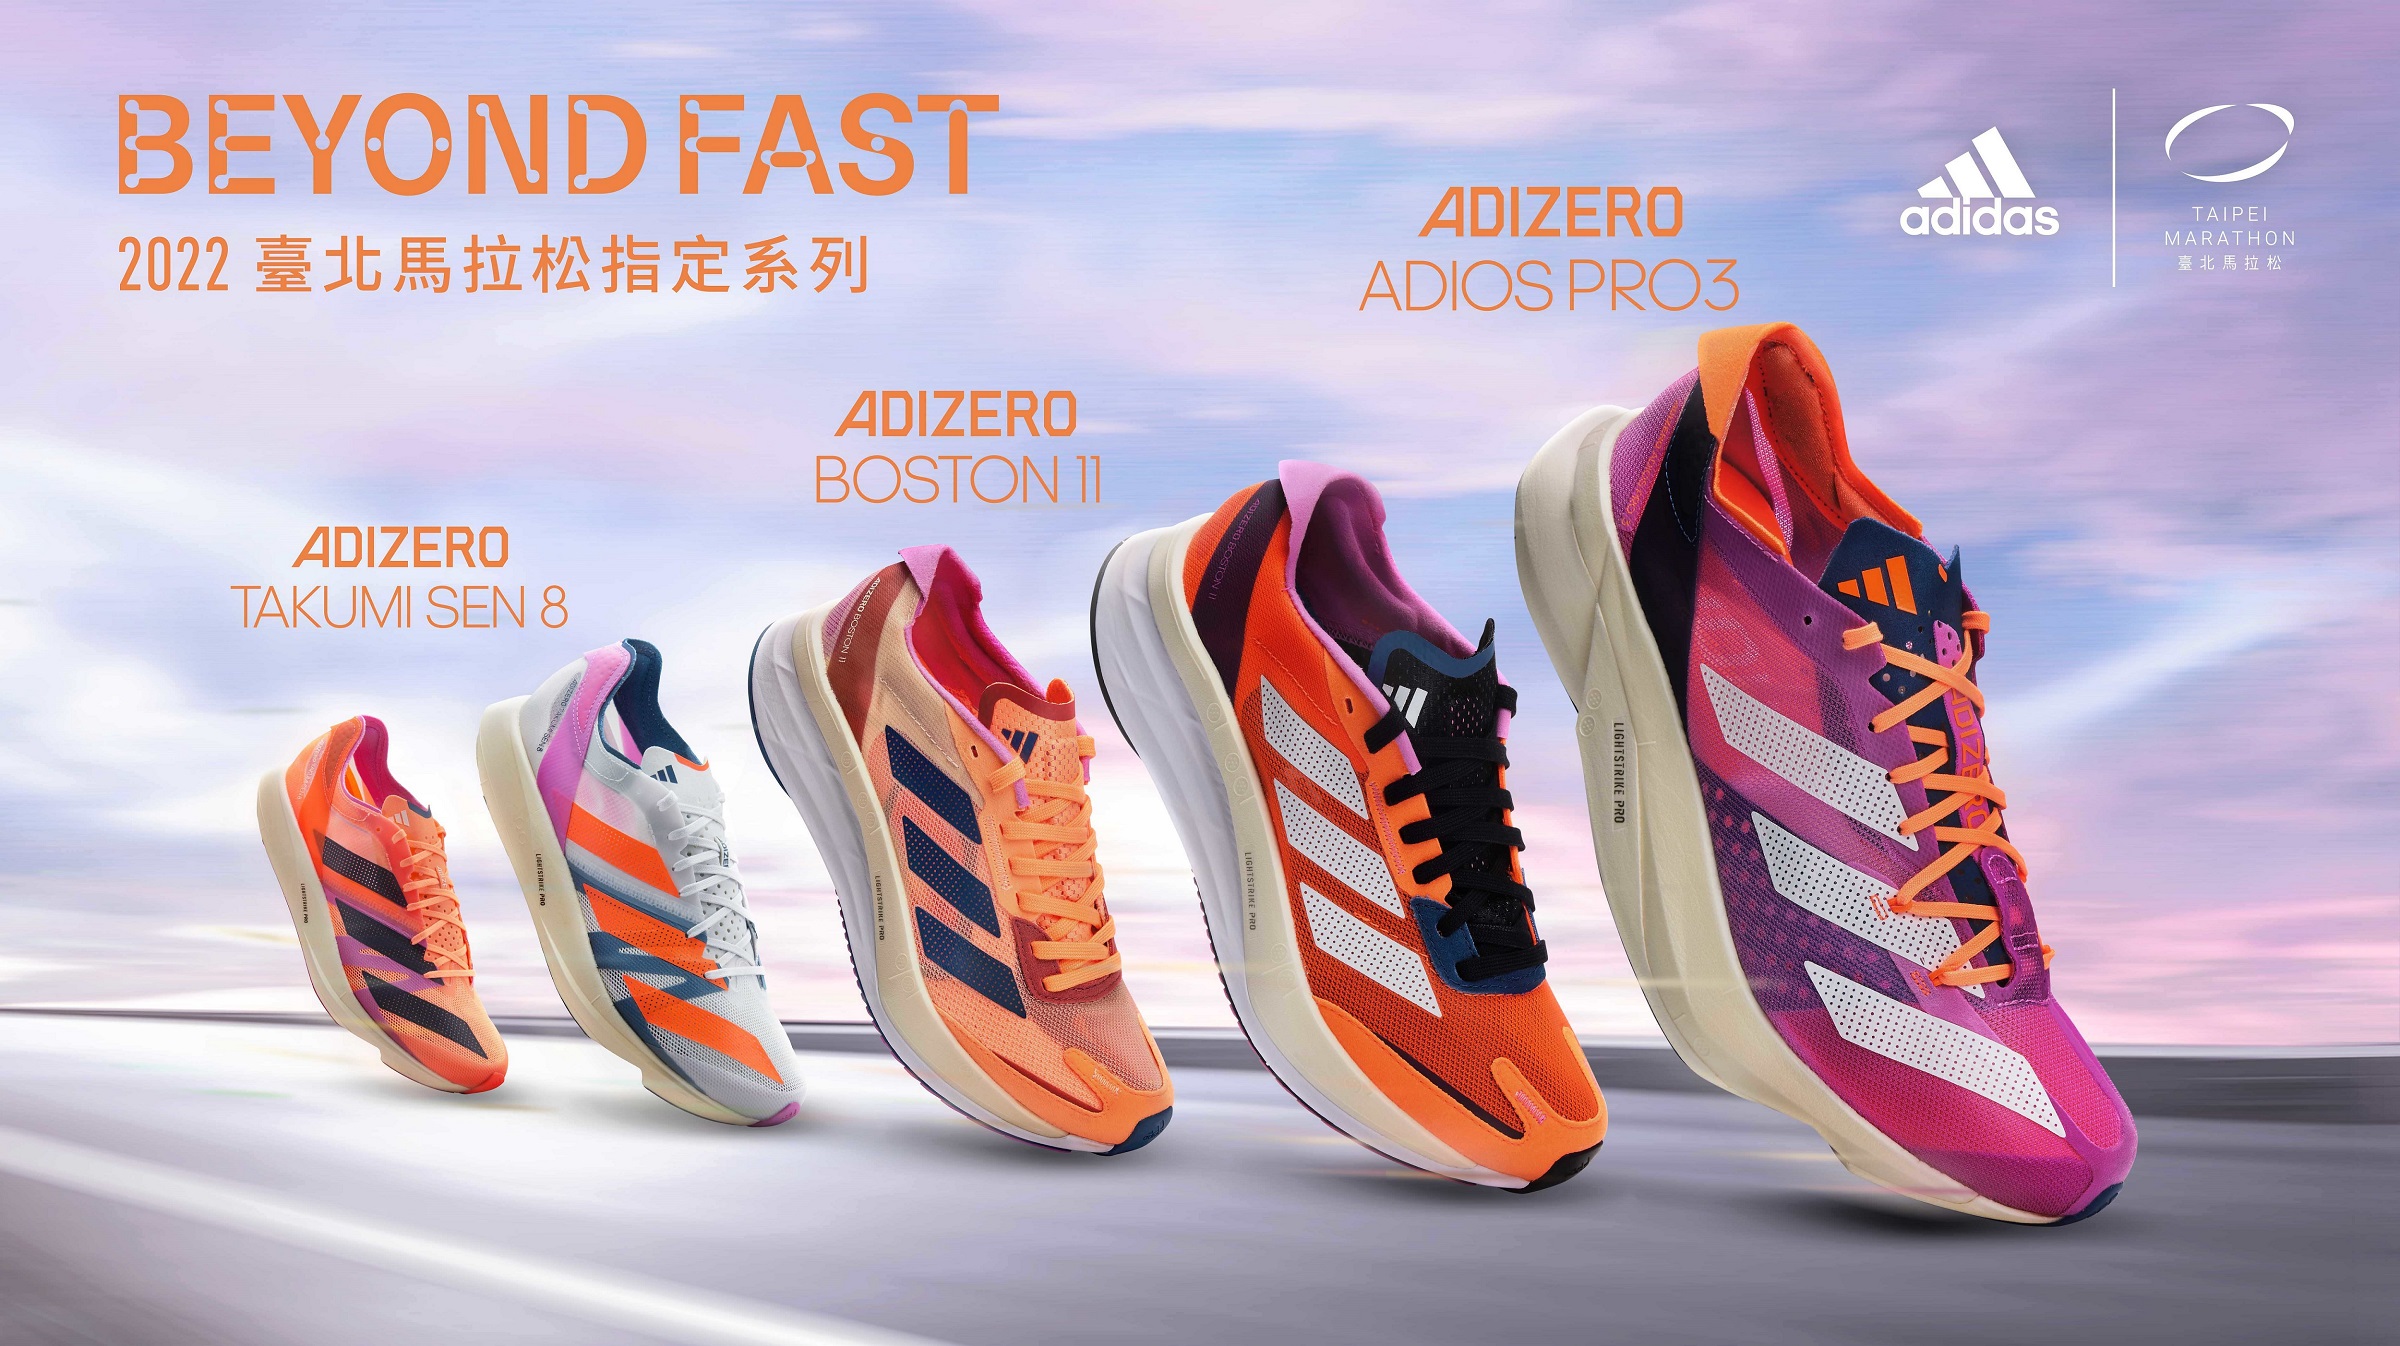 世界馬拉松冠軍跑鞋 Adizero Adios Pro 3 ， 炫彩紫亮眼登場超越速度極限，臺北馬拉松突破你的最佳紀錄。官方提供